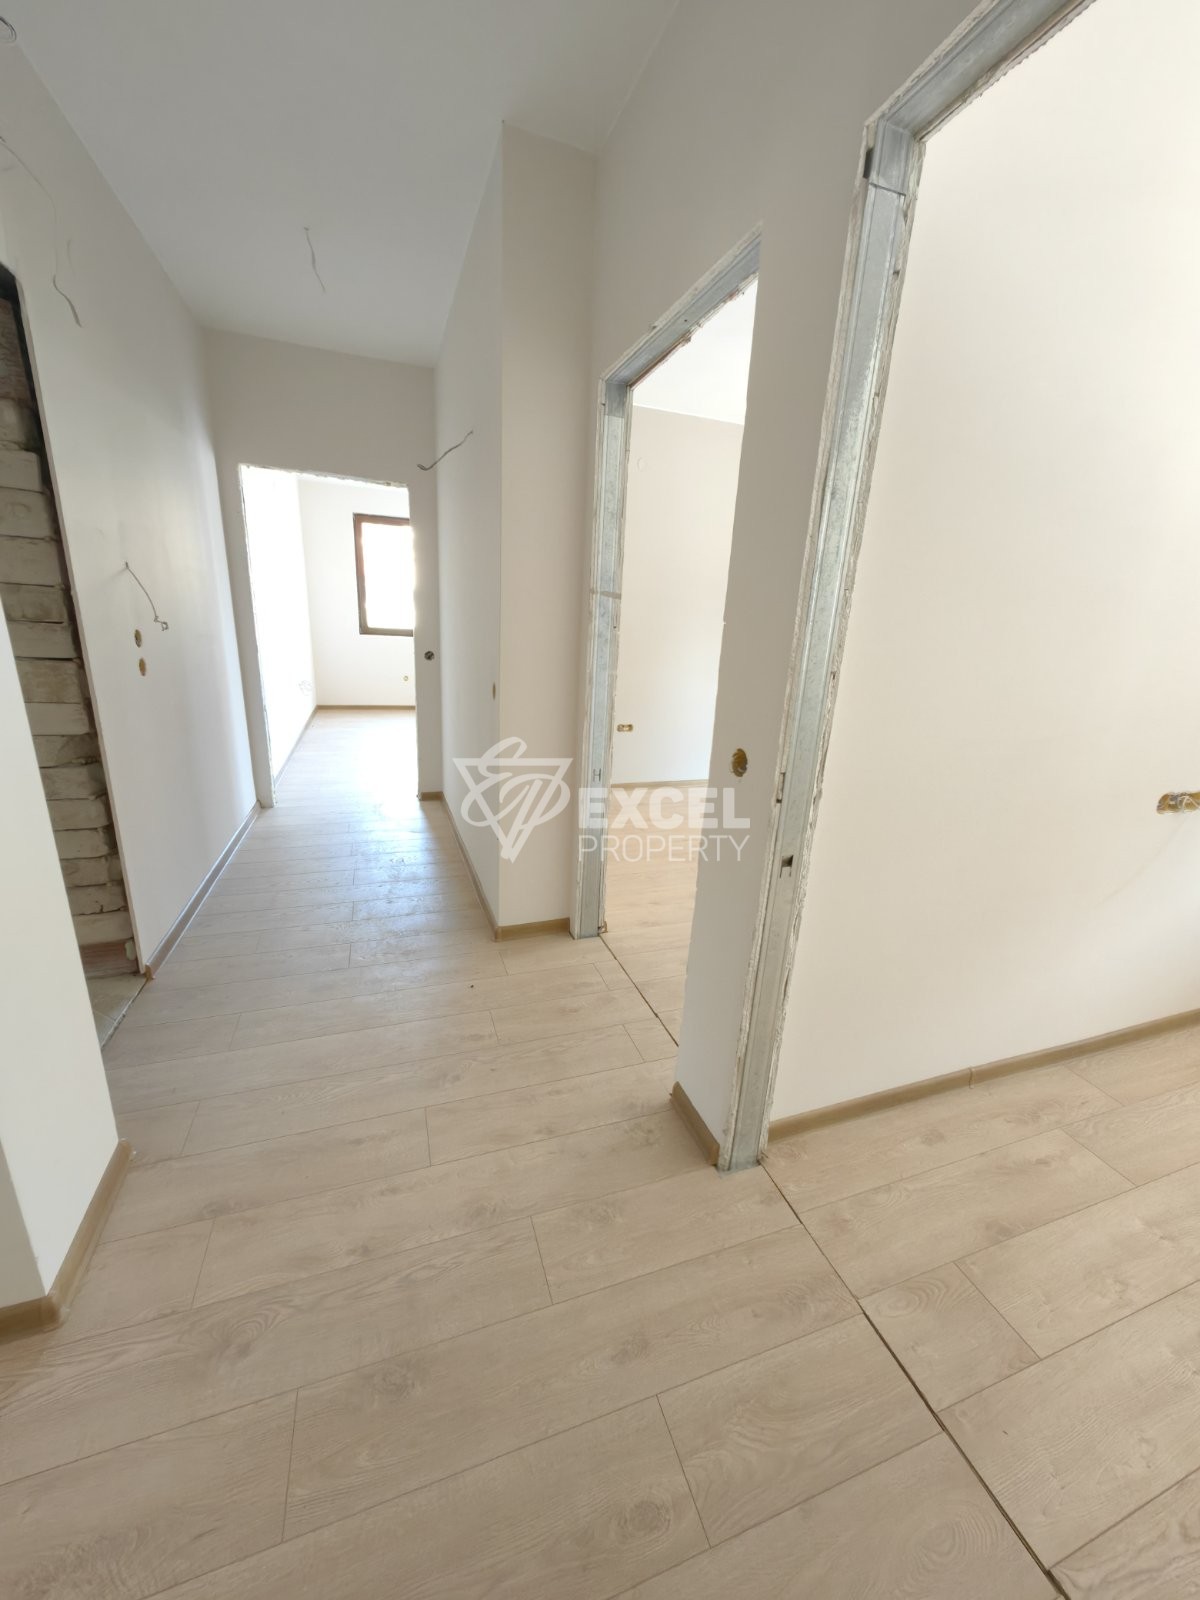 Продается трехкомнатная квартира в новом жилом доме, Банско